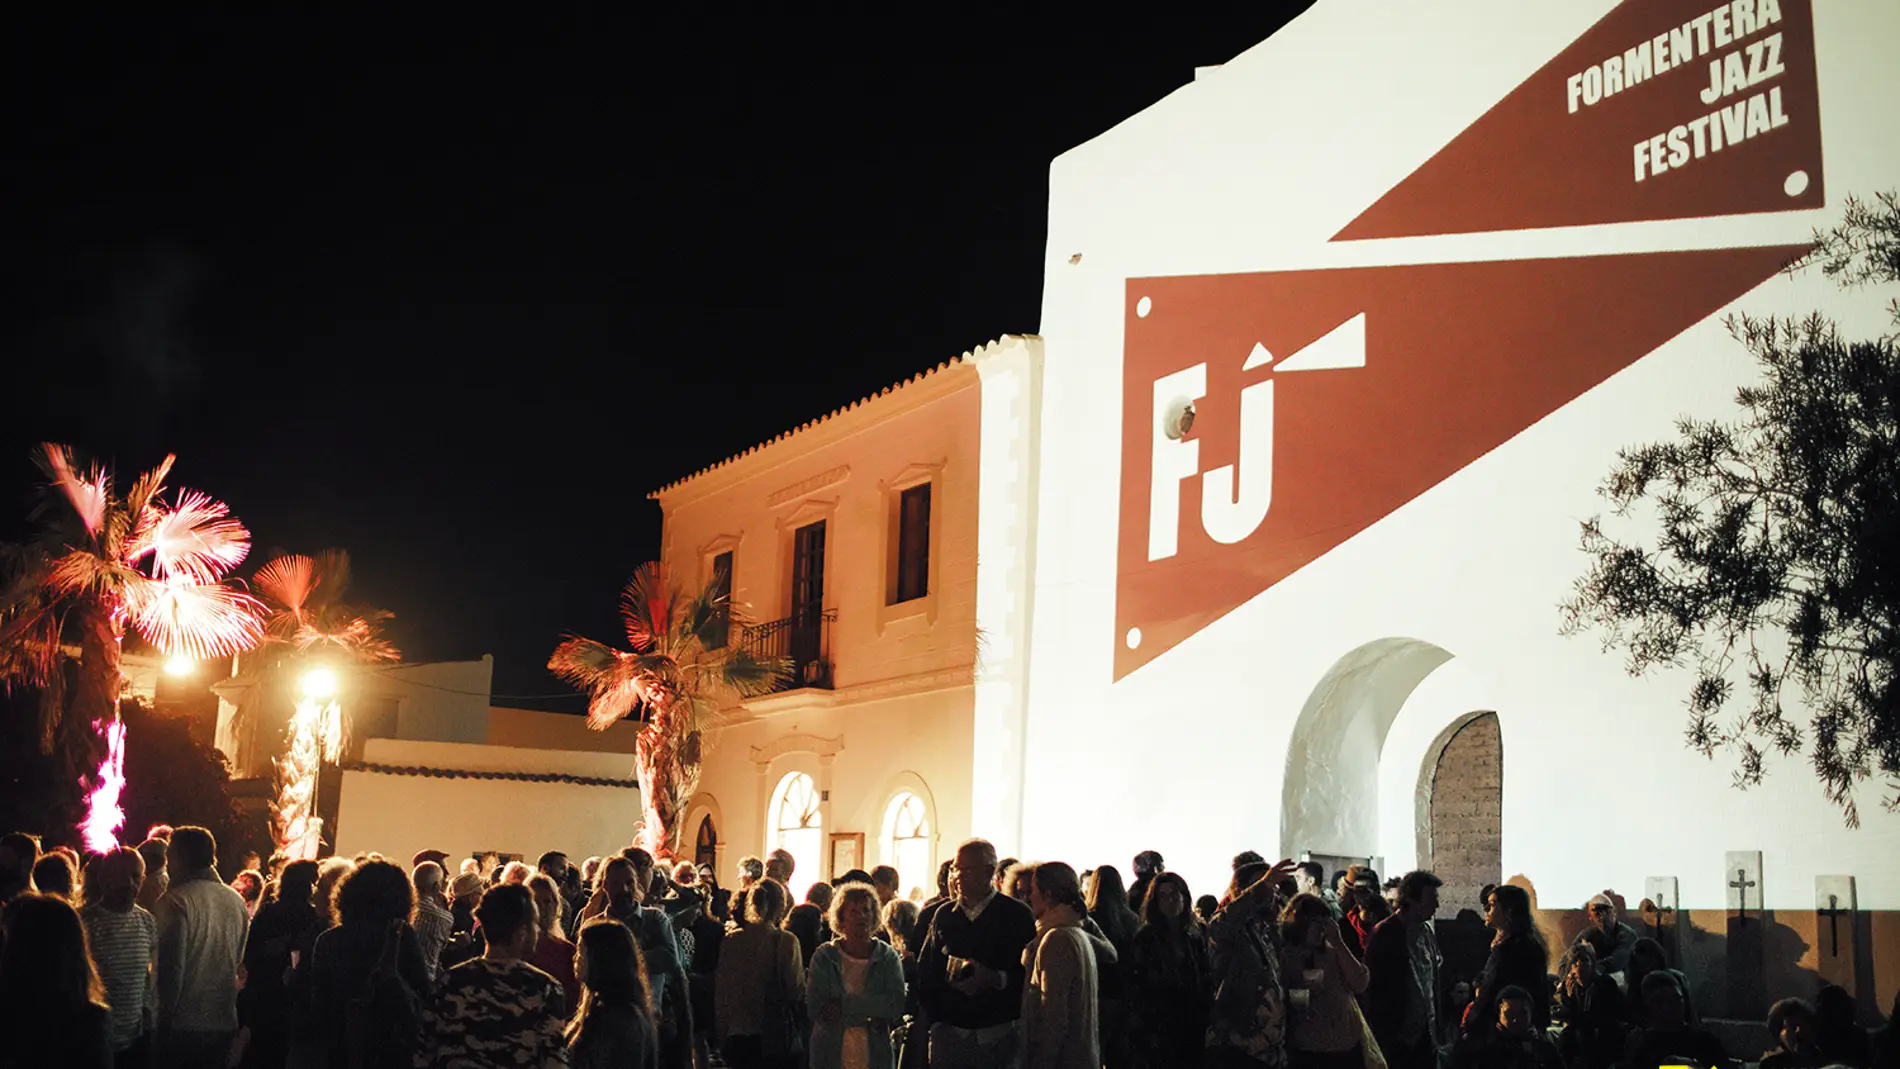 Formentera Jazz Festival: cita musical en Baleares a principios de junio